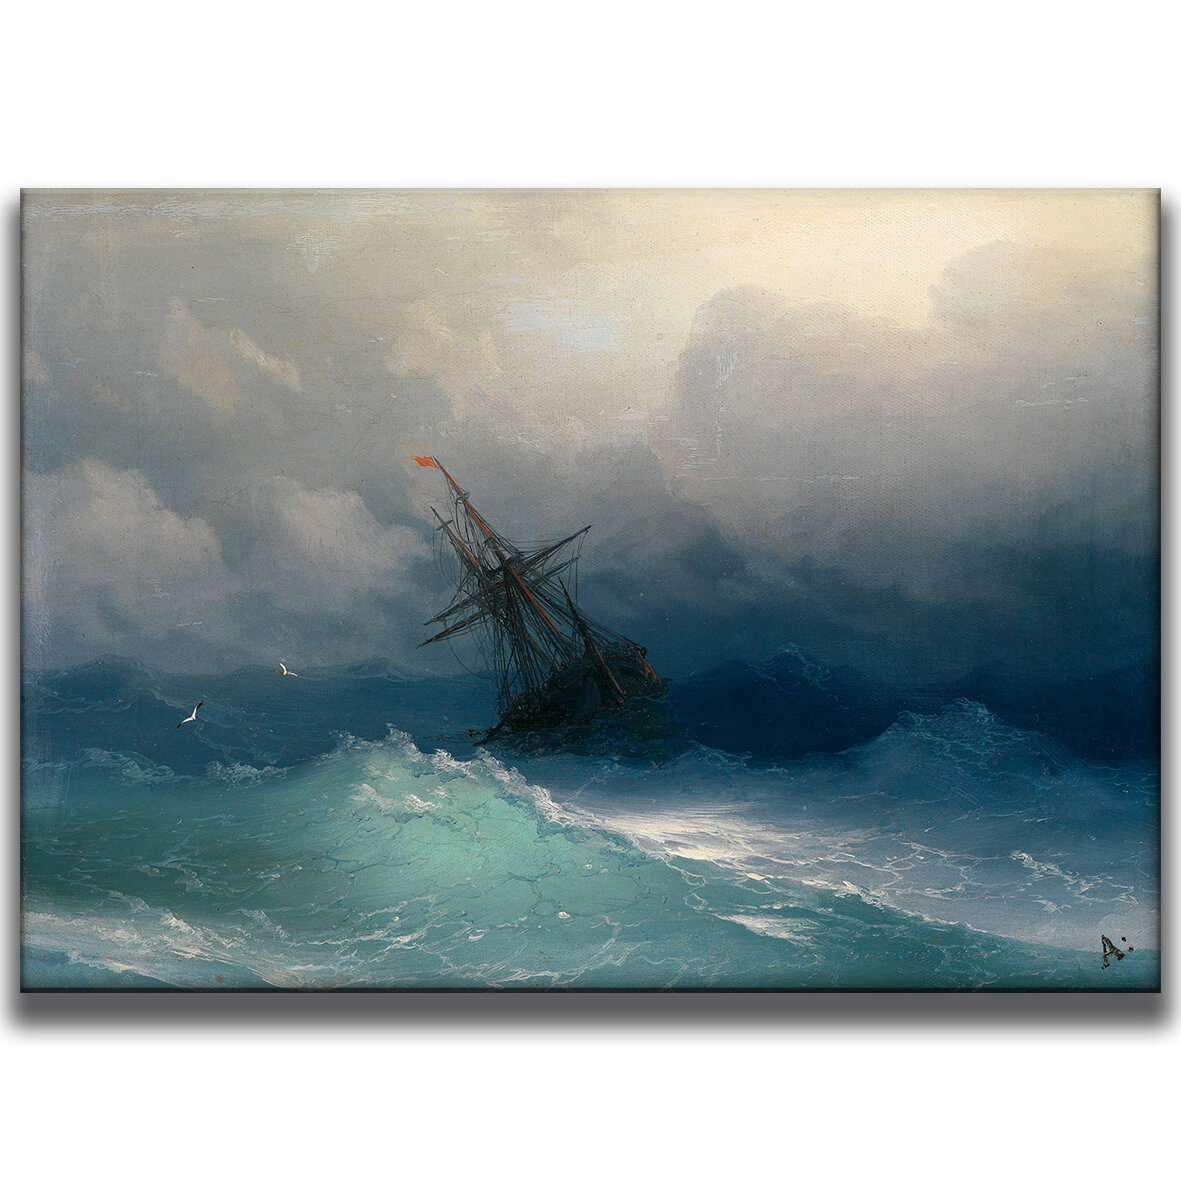 Картина для интерьера на холсте Ивана Айвазовского «Корабль в буйном море» 30х42, холст натянут на подрамник